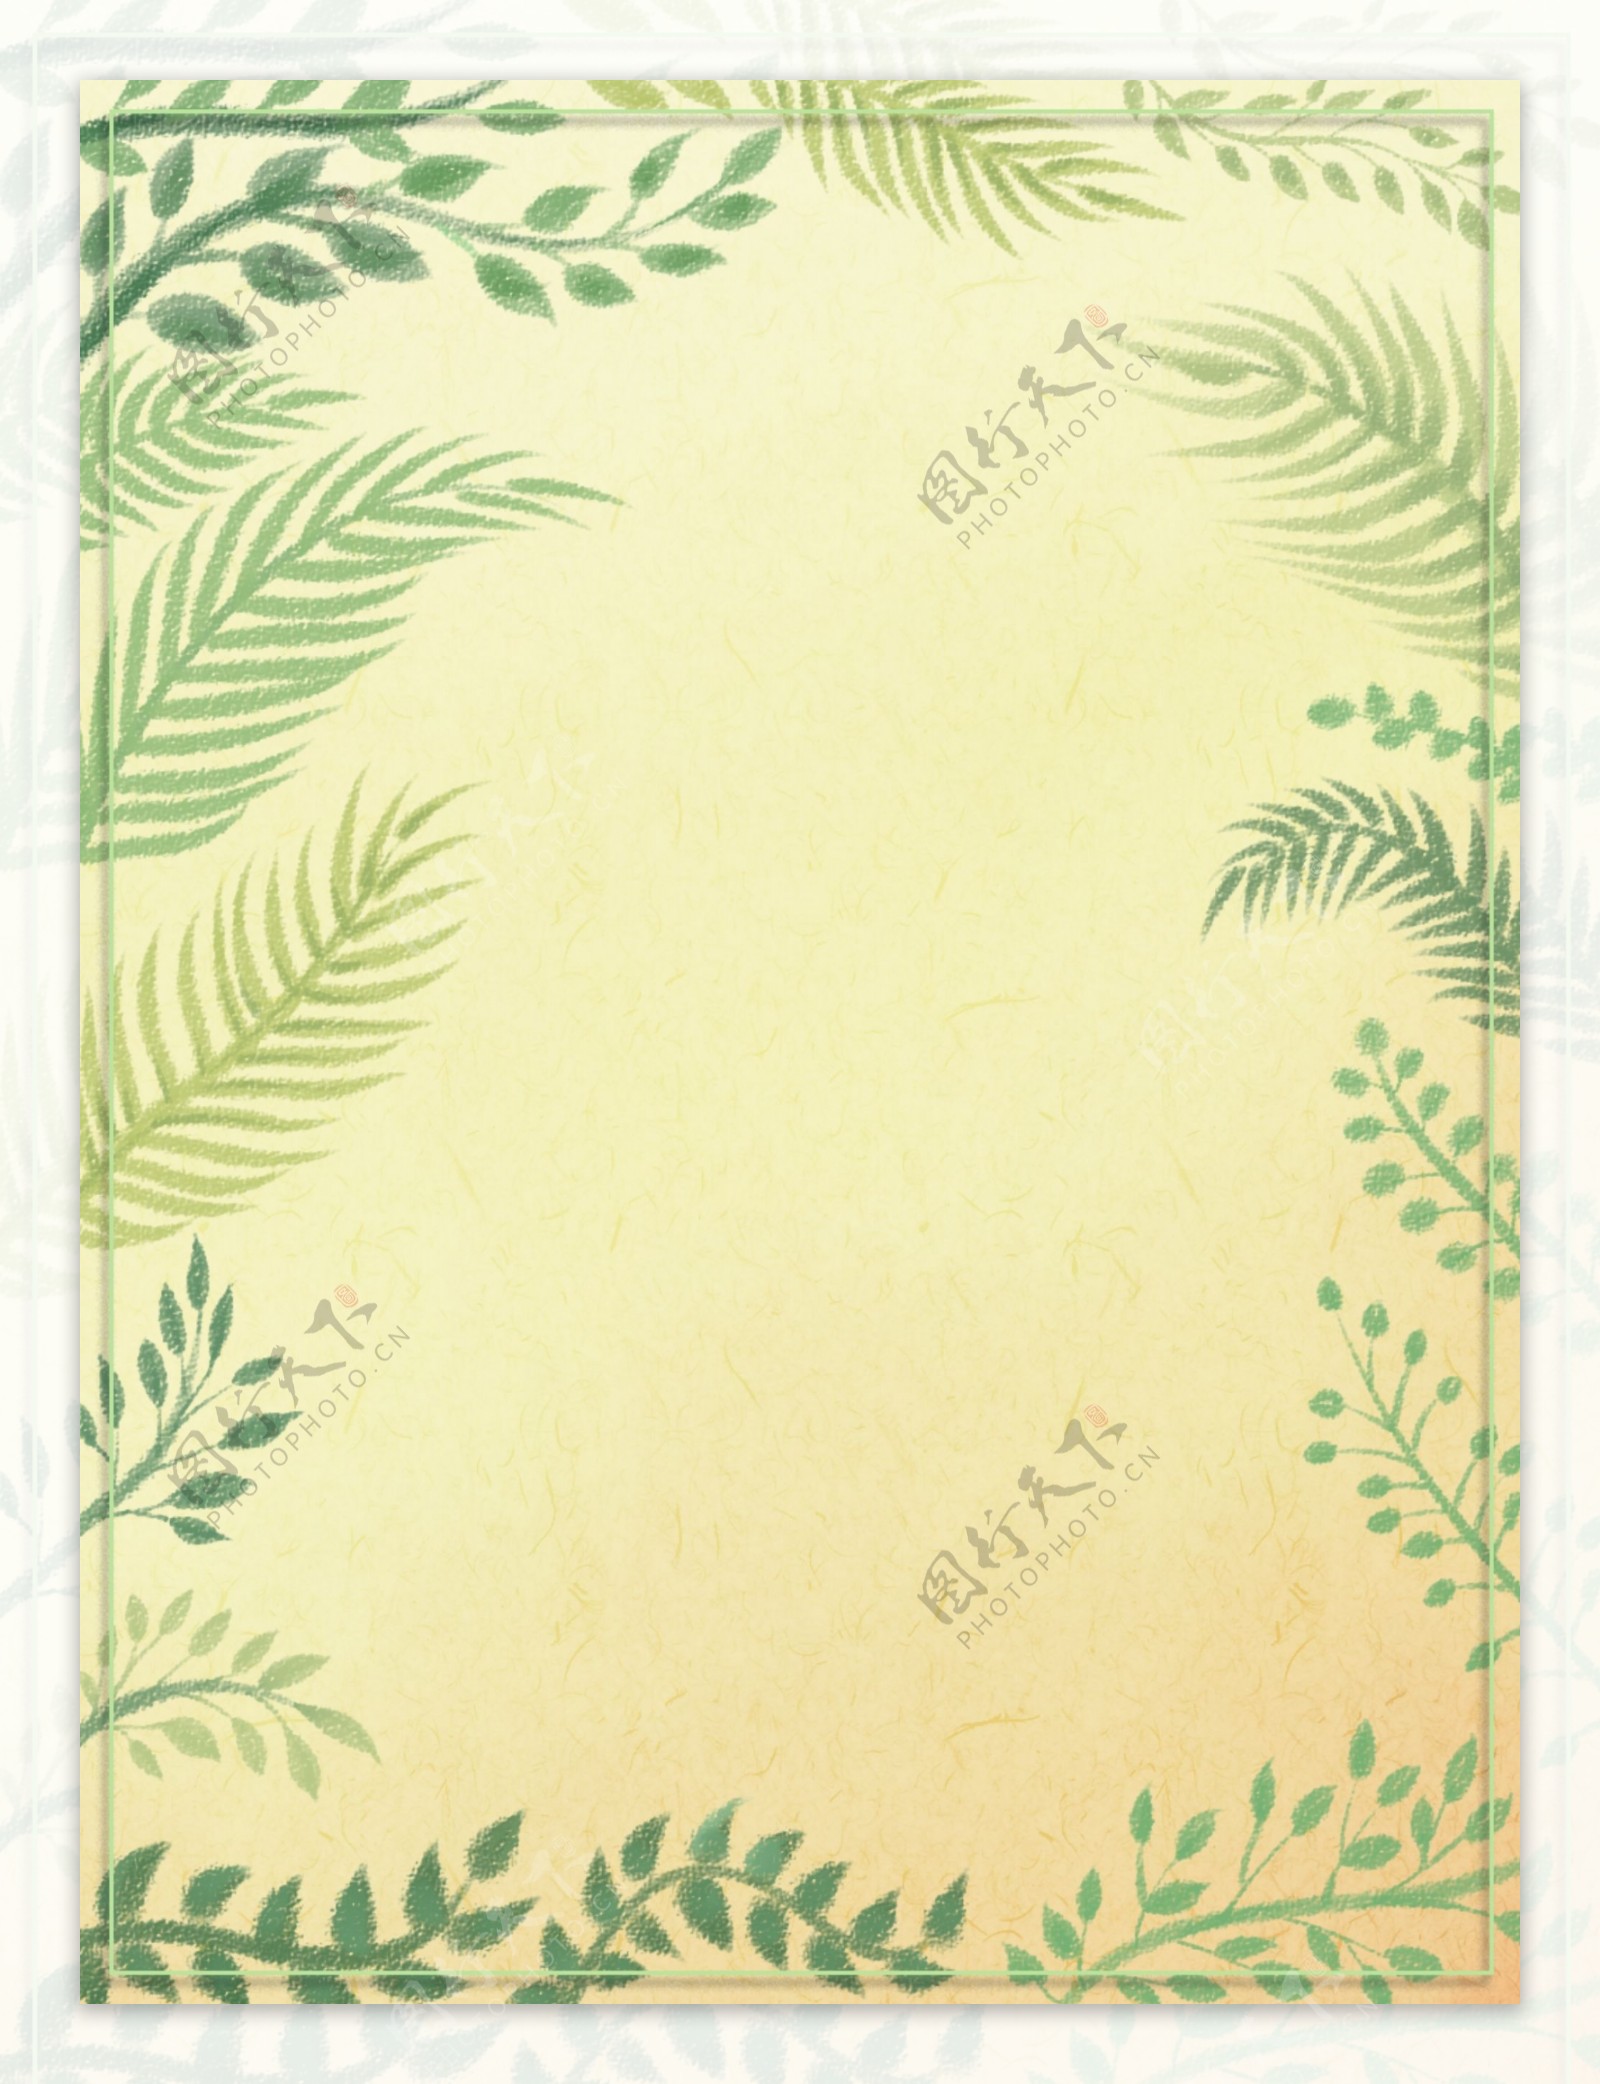 纯手绘原创小清新植物花卉叶子边框背景